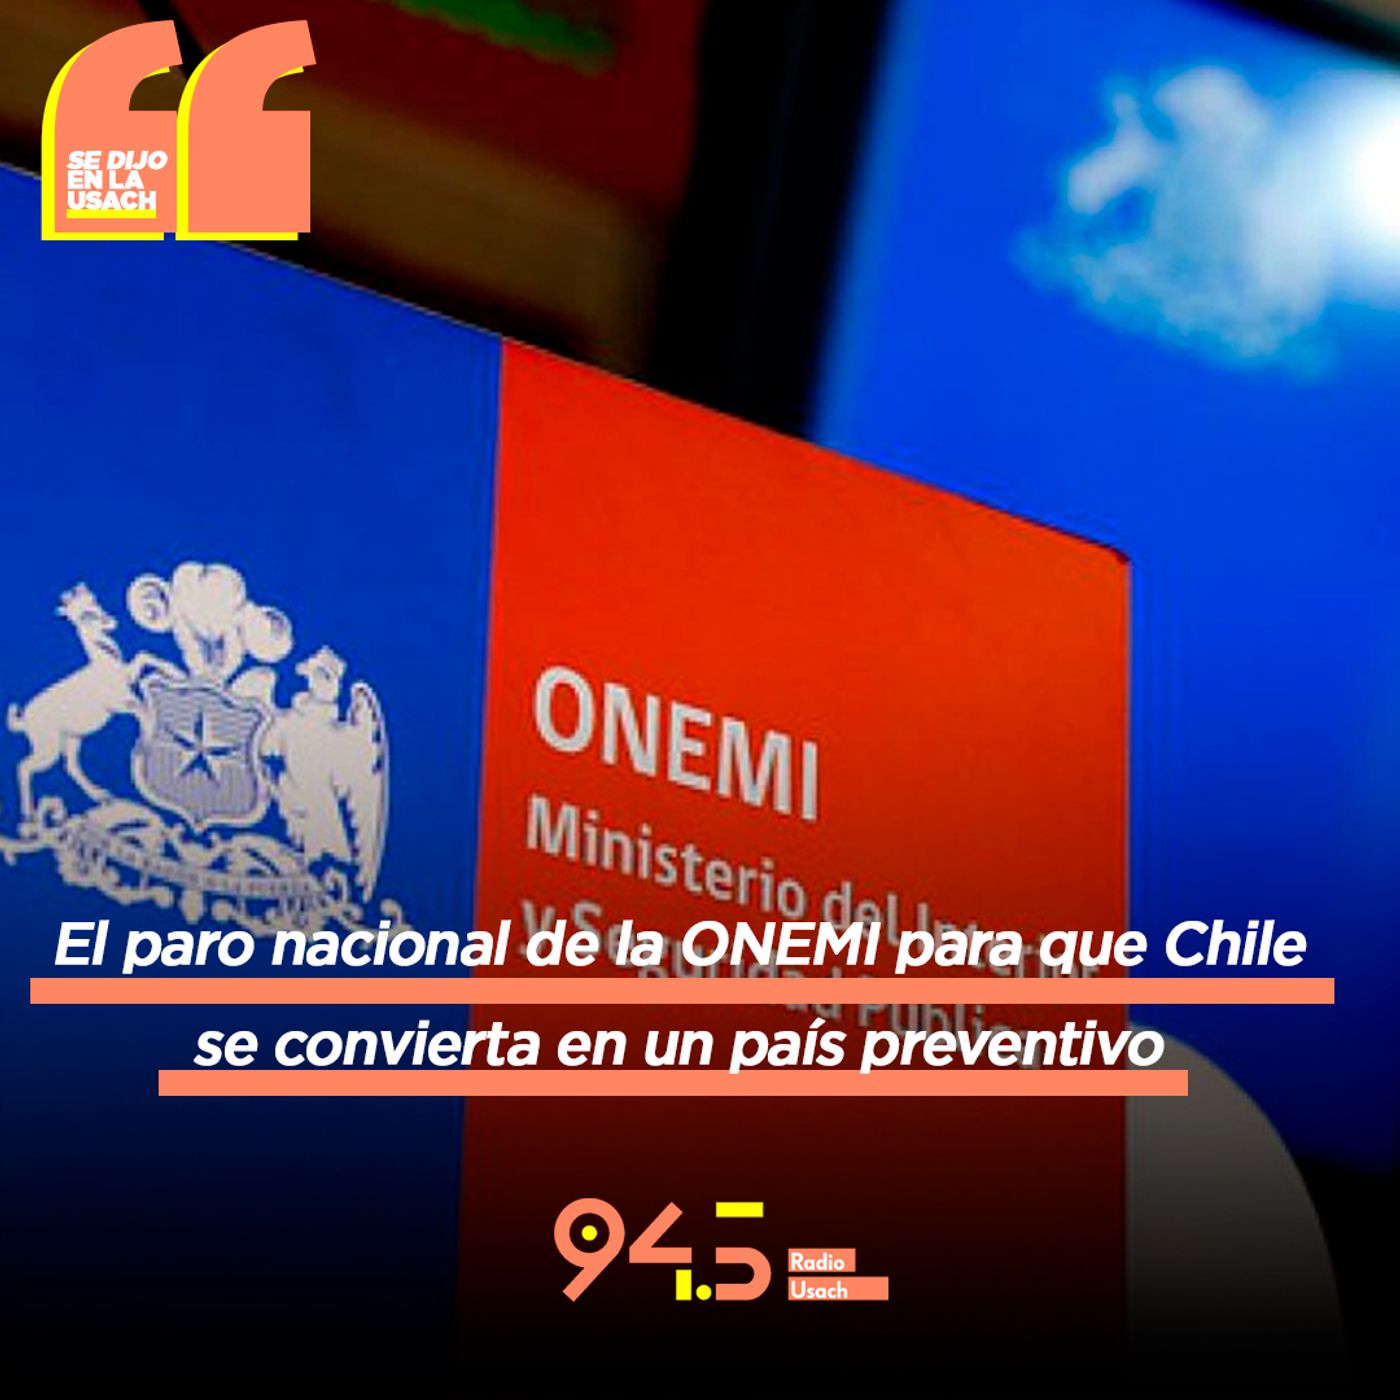 El paro nacional de la ONEMI para que Chile se transforme en un país preventivo